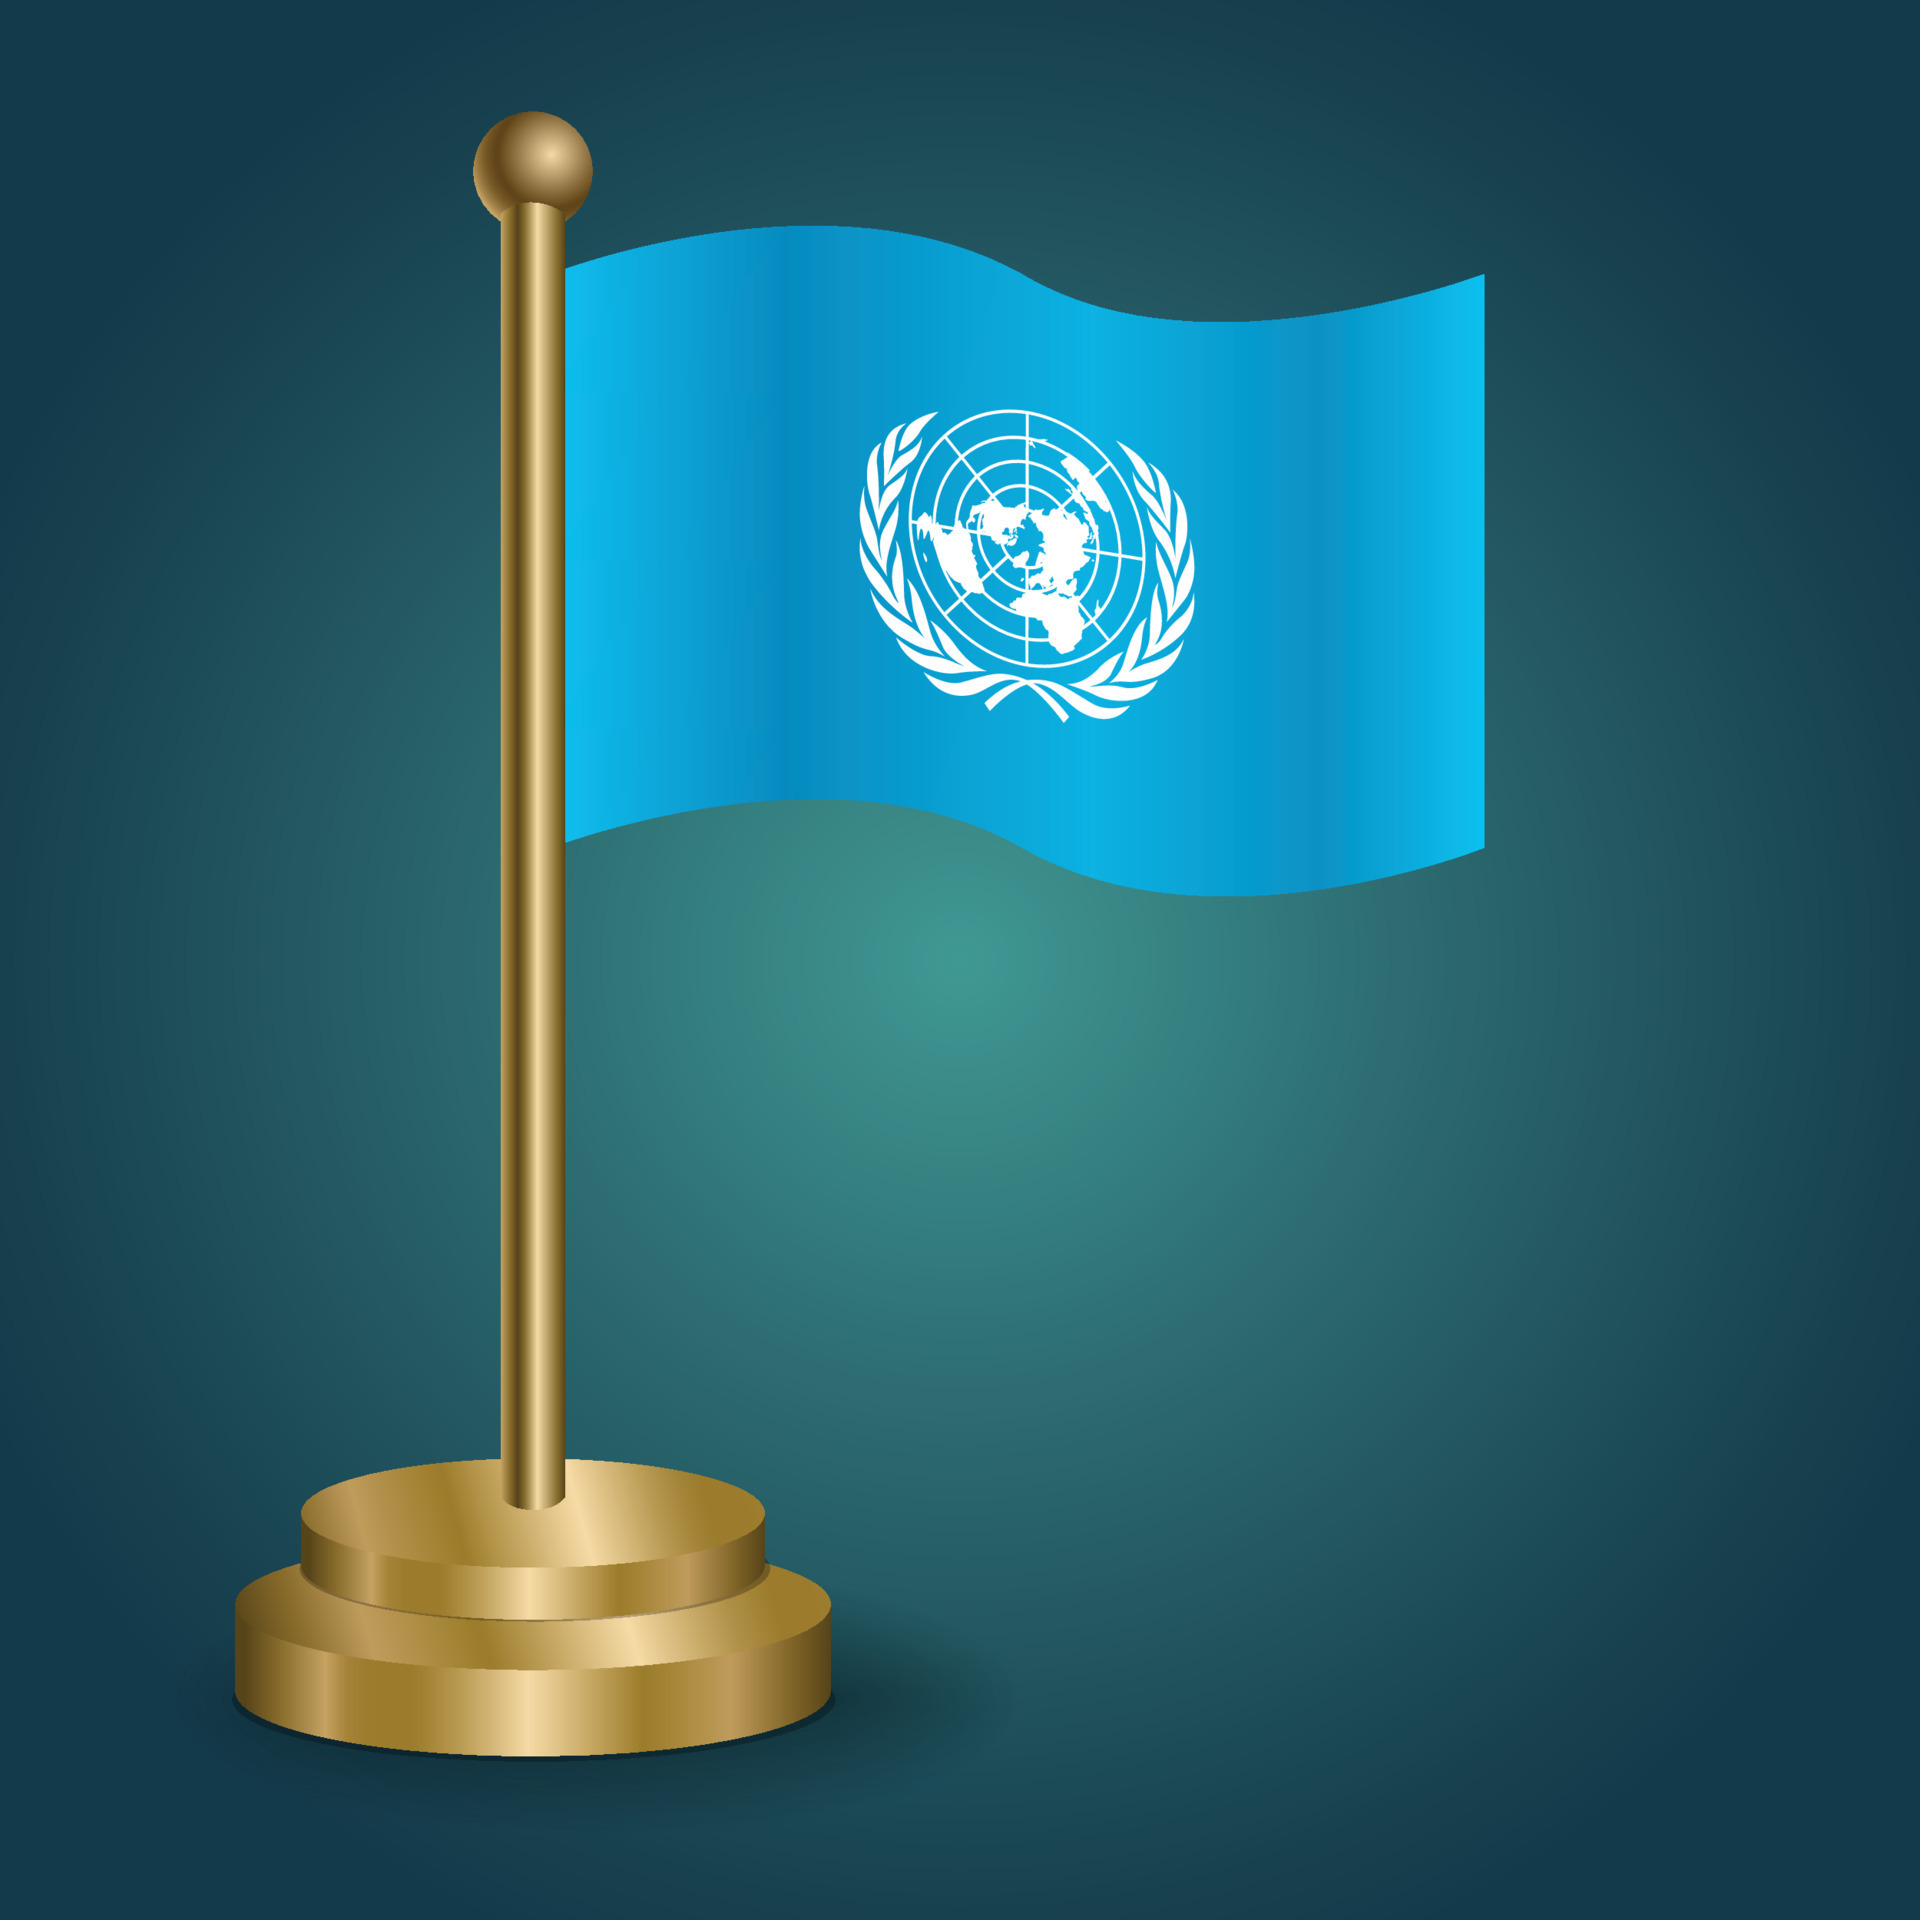 Huy hiệu quốc kỳ của Liên Hợp Quốc với những quốc kỳ của các nước thành viên trên nền vải xanh da trời tượng trưng cho hiệp đồng chung, lòng tin và sự đoàn kết. Hình ảnh đẹp mắt này sẽ giúp bạn tìm hiểu và cảm nhận văn hóa và giá trị của mỗi quốc gia, cùng với sự gắn kết bền chặt giữa các quốc gia này.